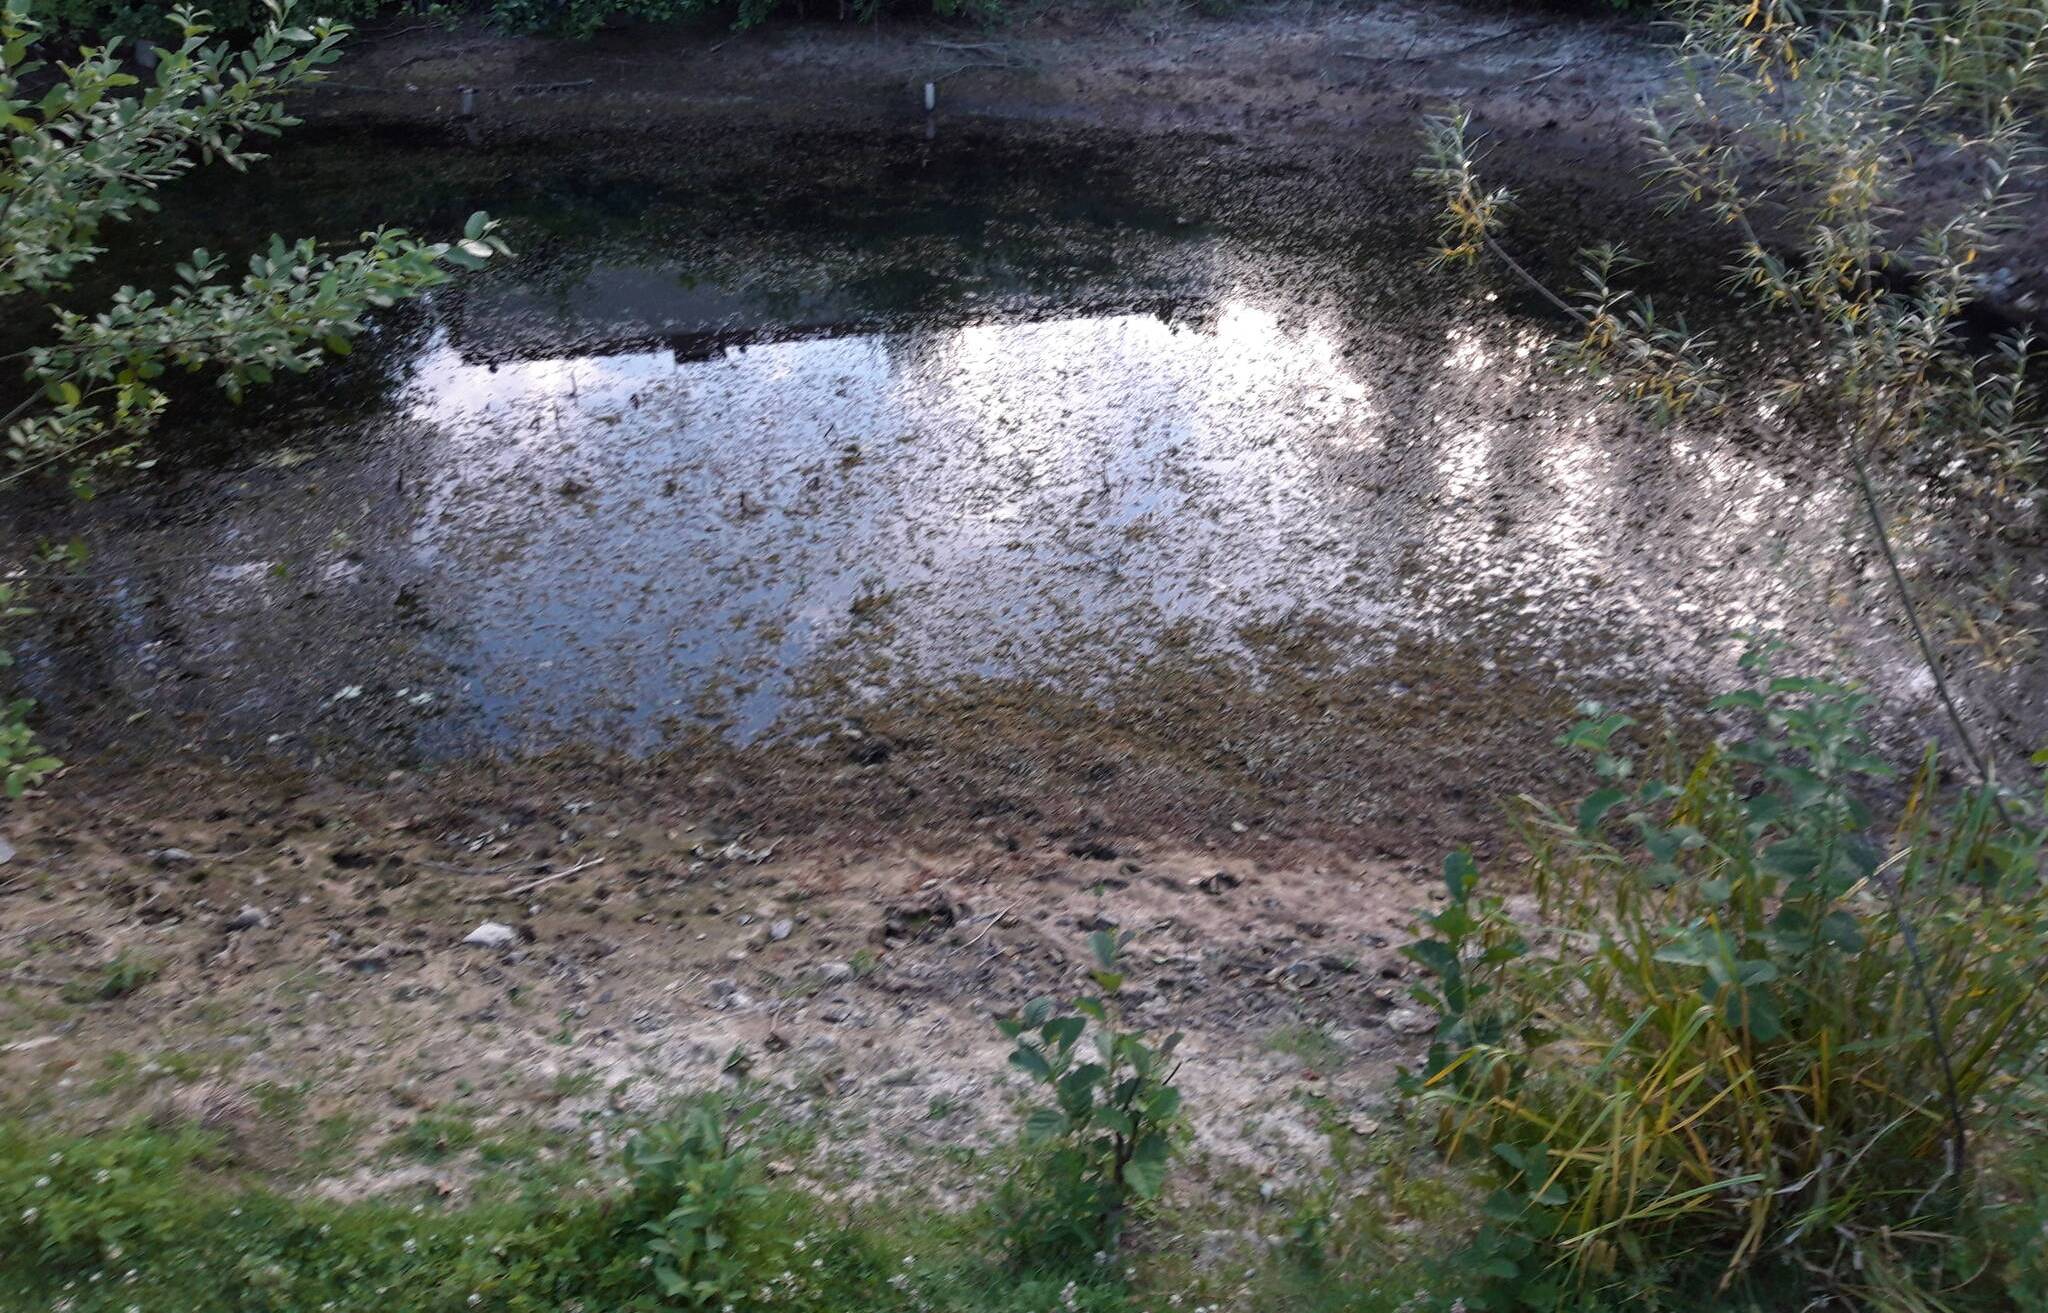  Der Teich im Comberg-Park ist fast komplett trocken gelegt.  